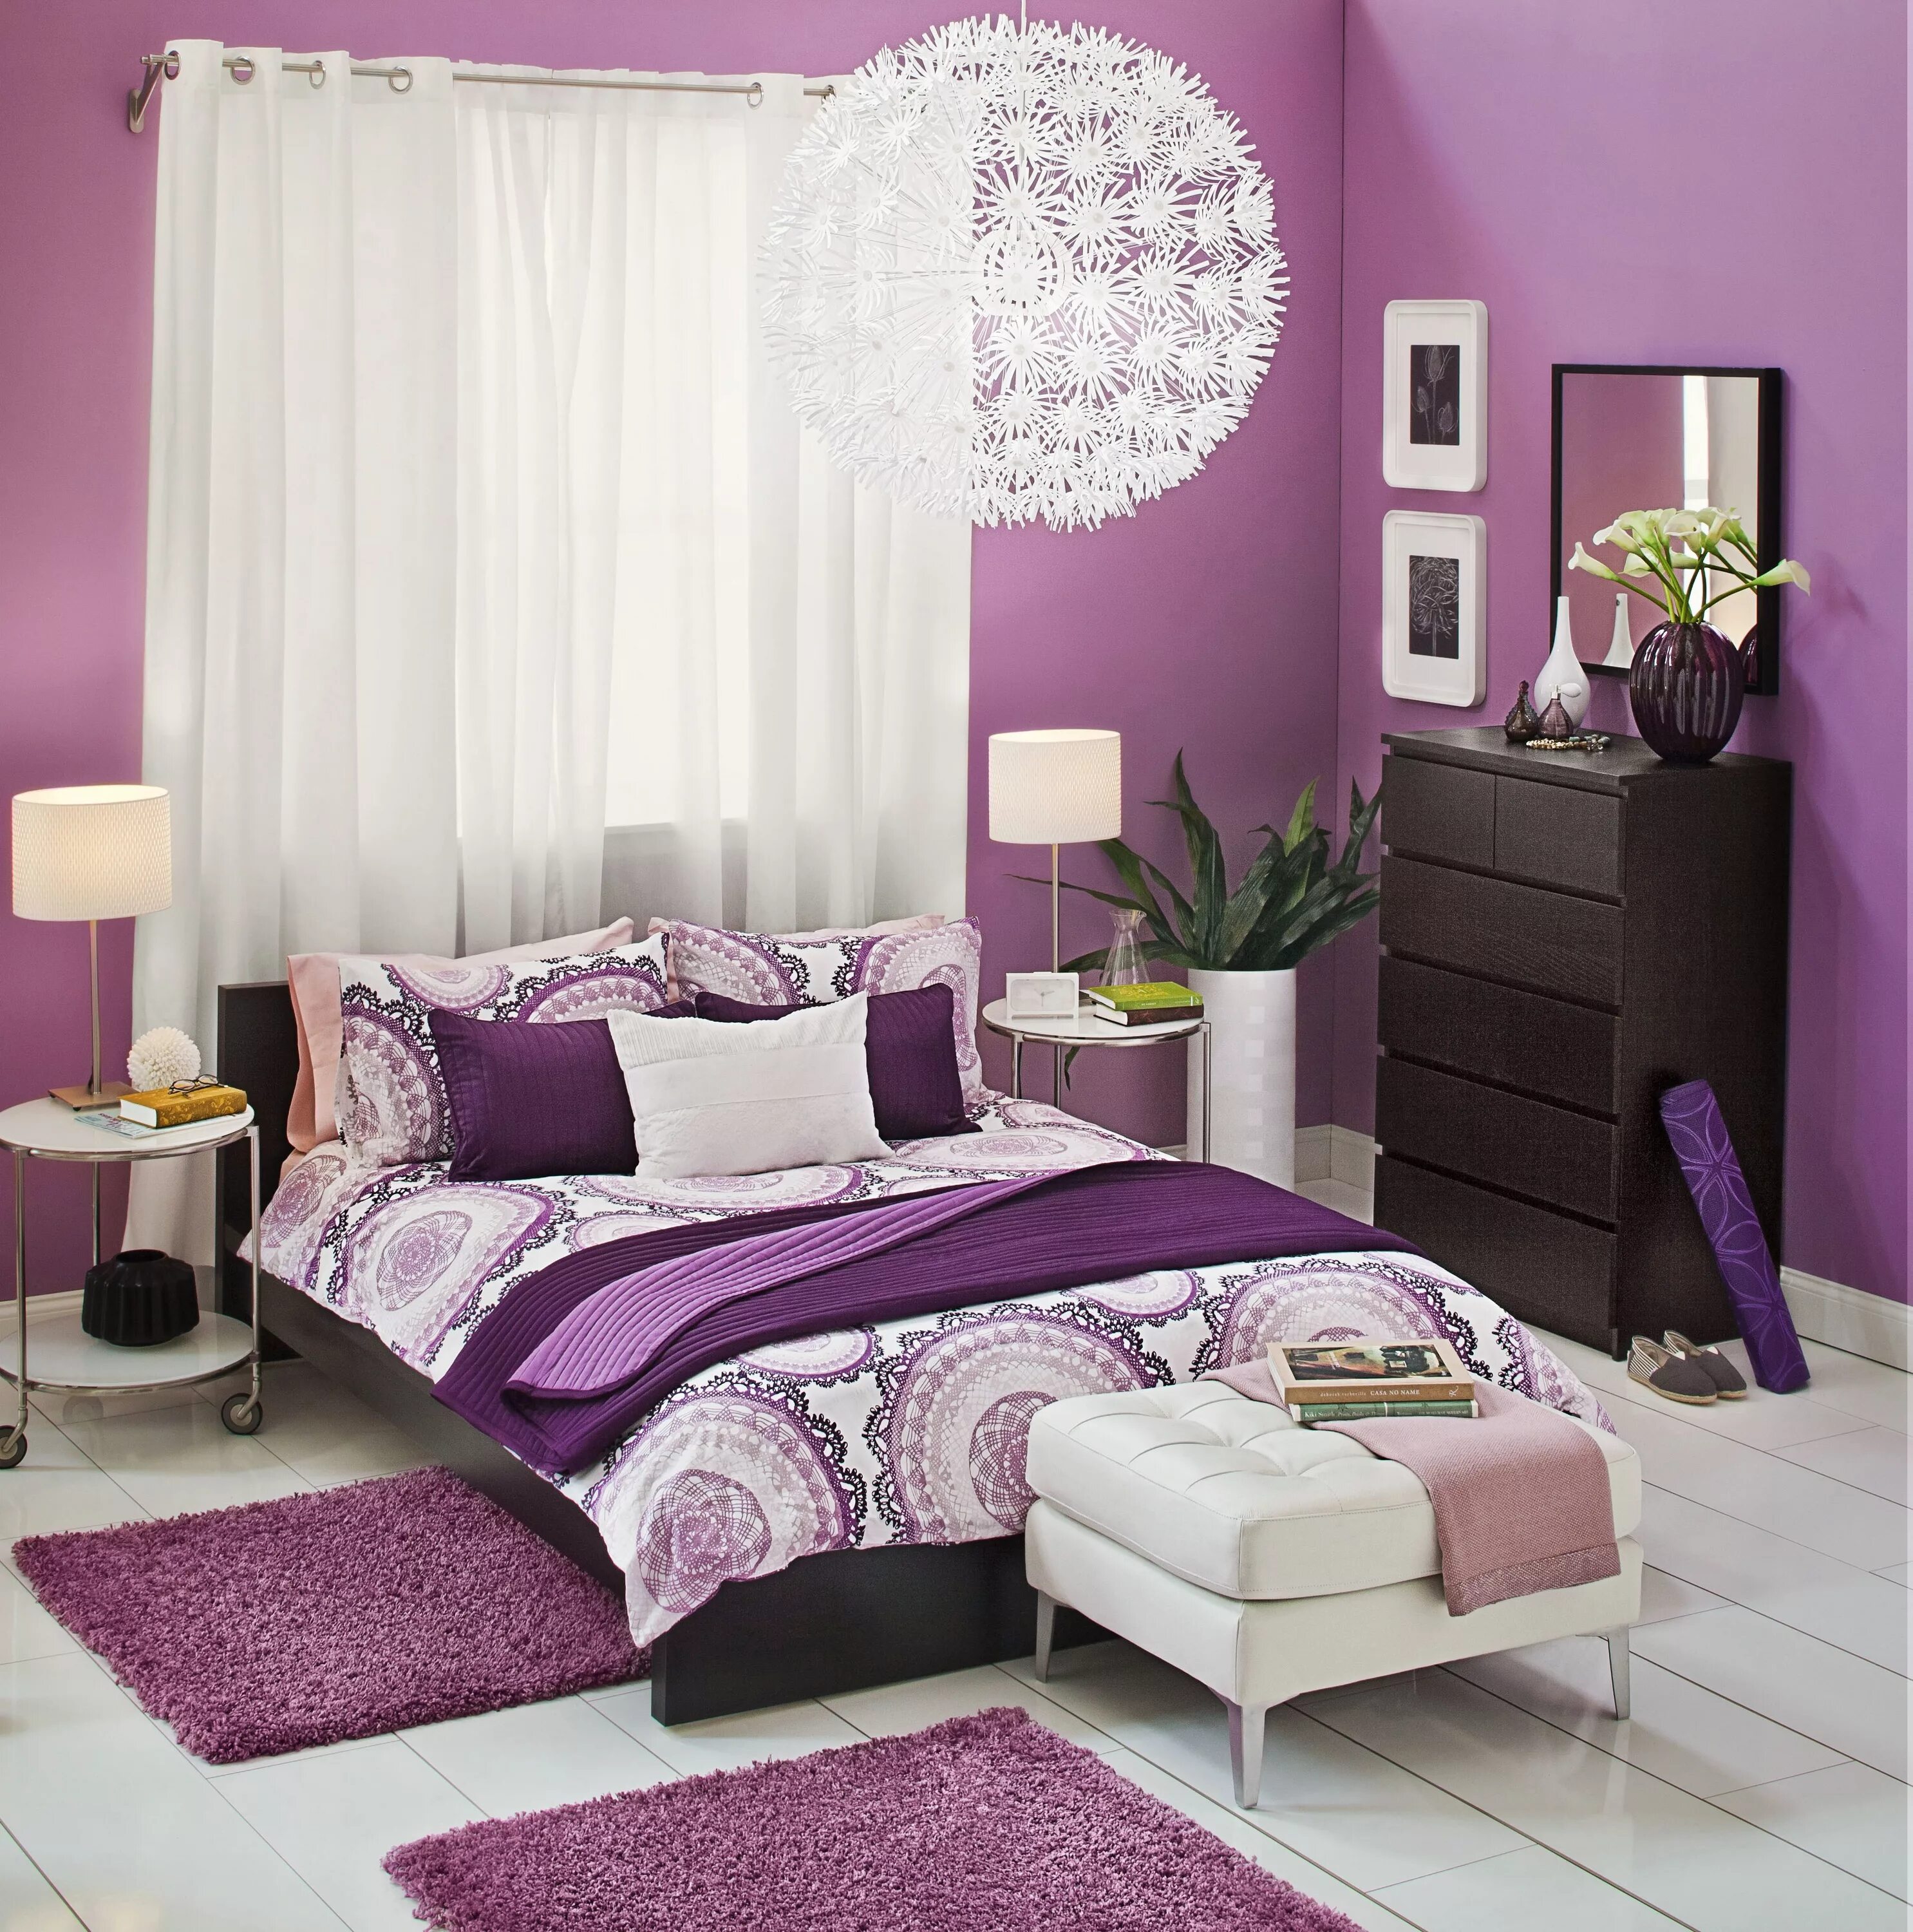 Фиолетовые белые обои. Комната в сиреневом цвете. Спальня в фиолетовых тонах. Спальня в сиренево белых тонах. Спальня в сиреневом цвете.